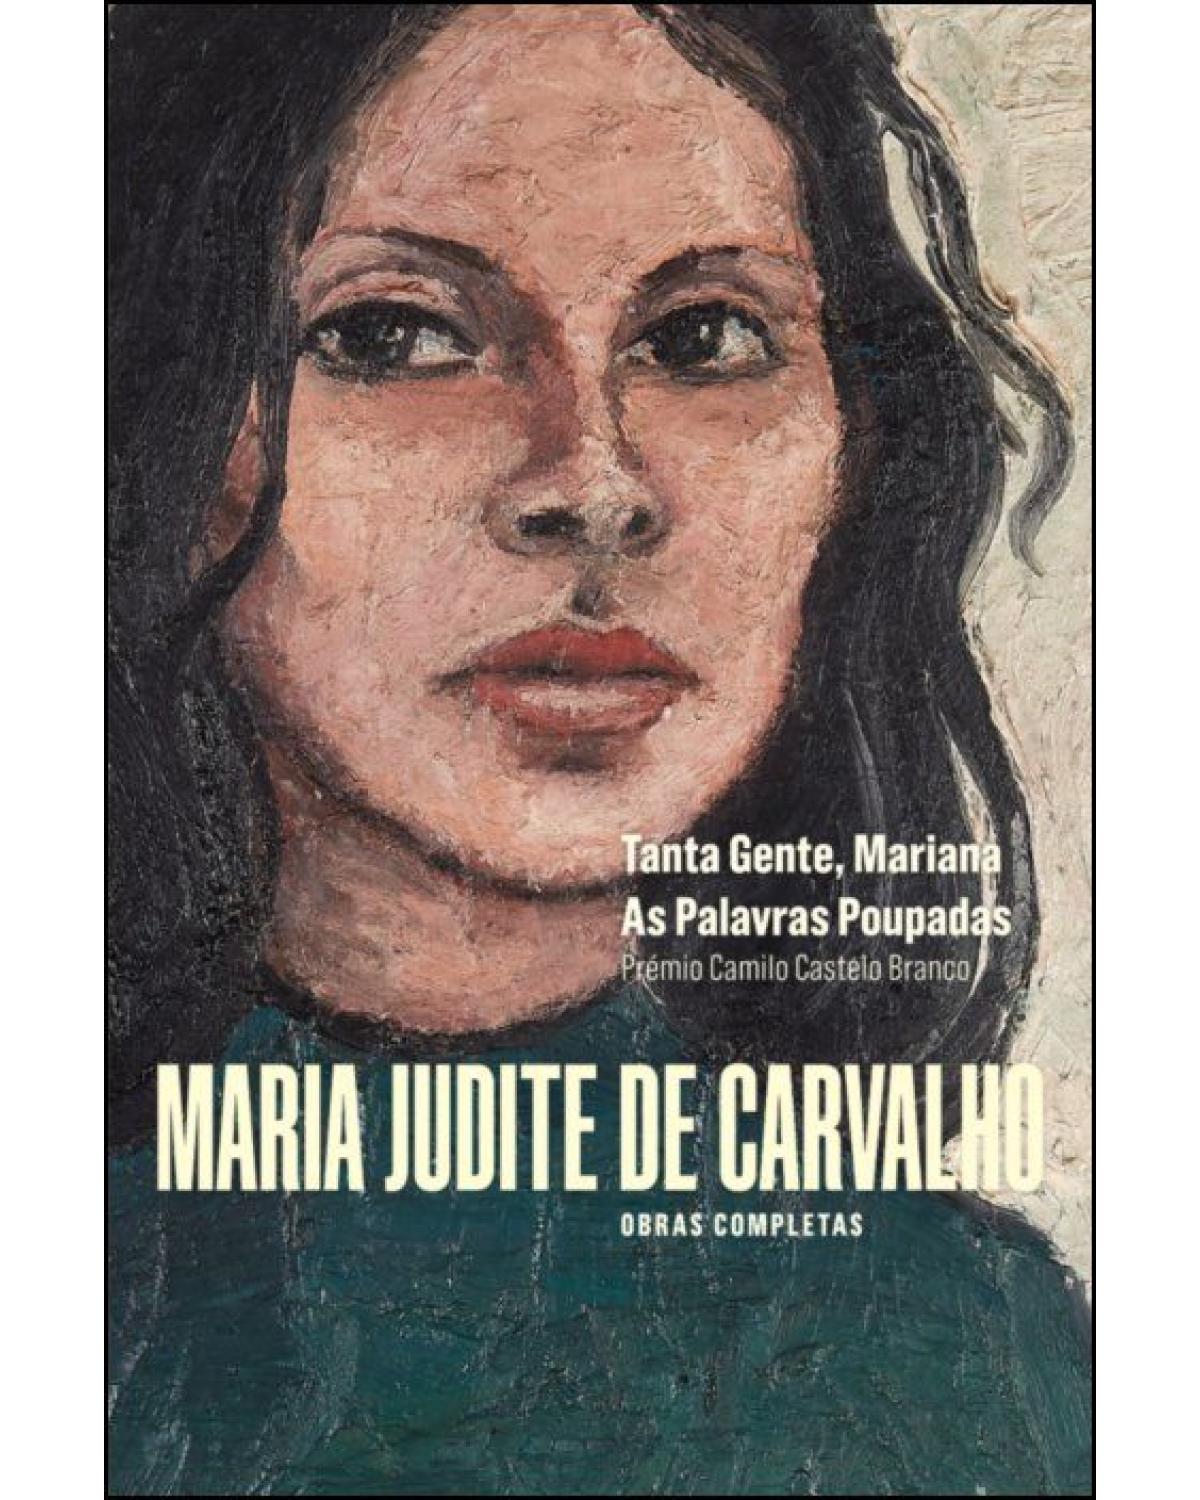 Obras Completas de Maria Judite de Carvalho - Volume 1: Tanta Gente, Mariana - As Palavras Poupadas - 1ª Edição | 2020